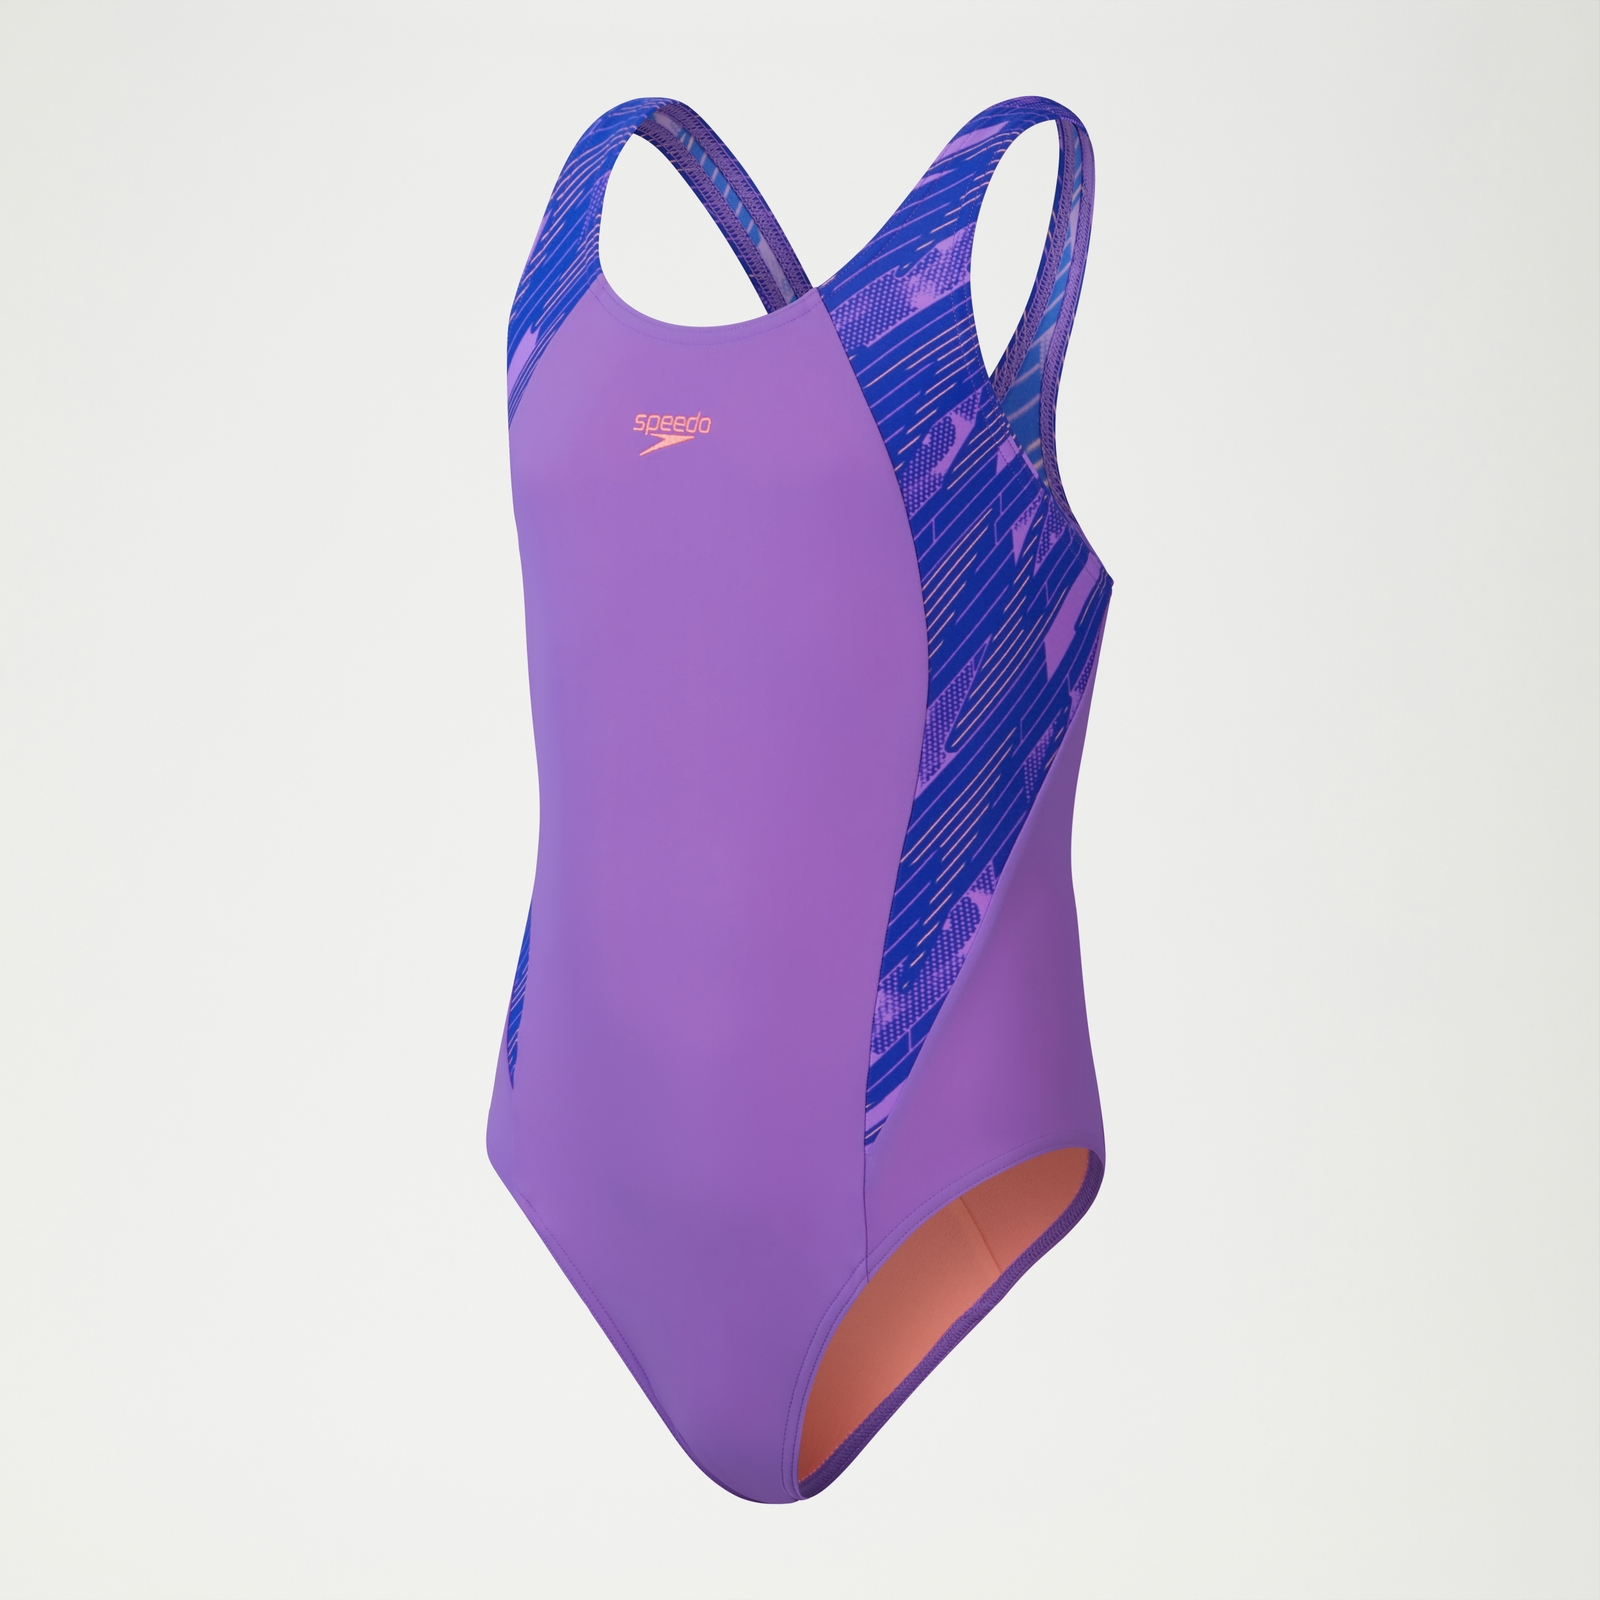 HyperBoom Splice Muscleback-Badeanzug für Mädchen Violett/Blau